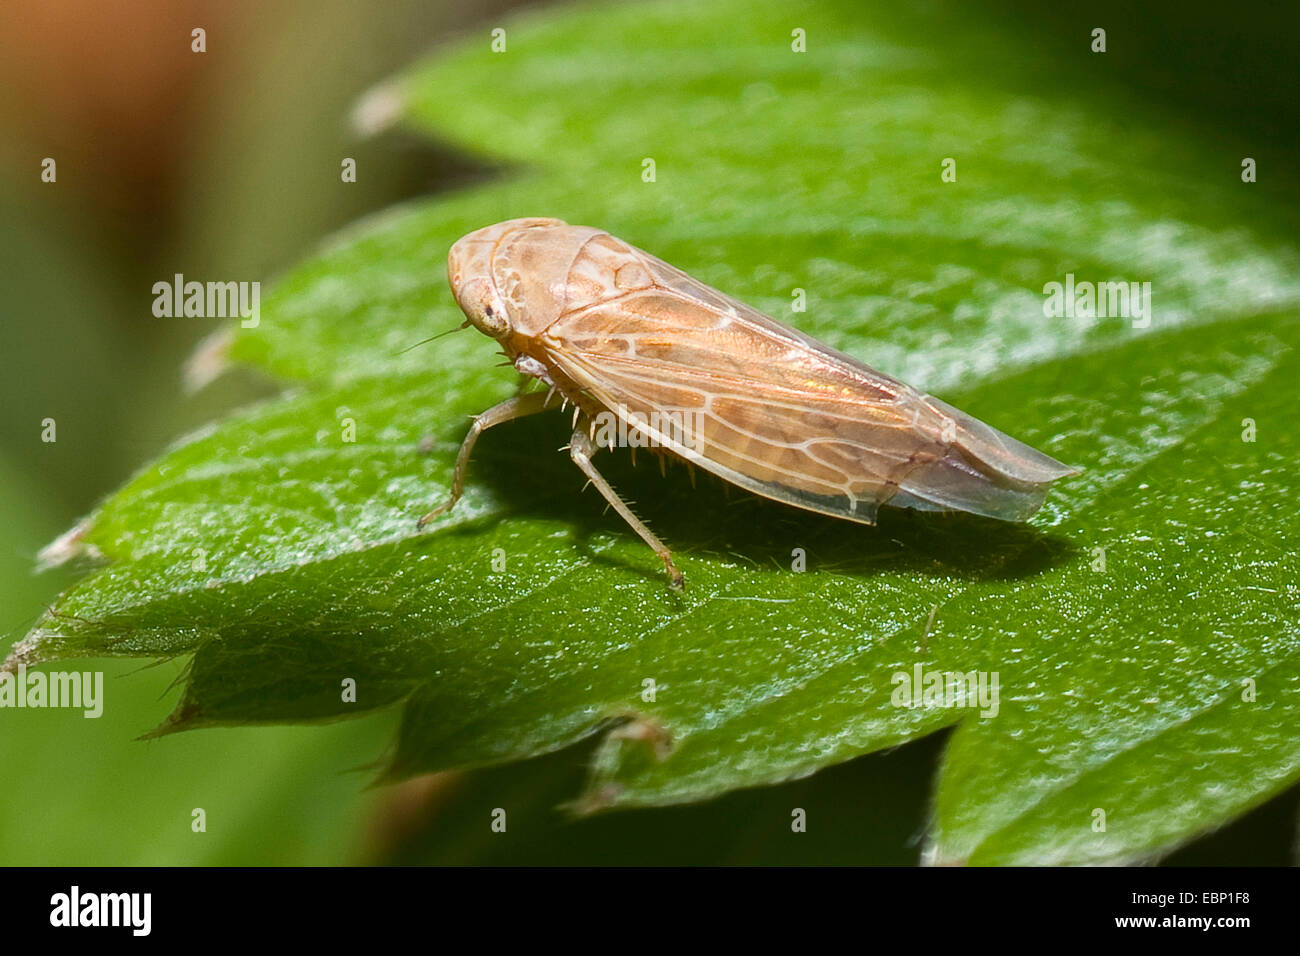 (Thamnotettix dilutior cicadelles), sur une feuille, Allemagne Banque D'Images